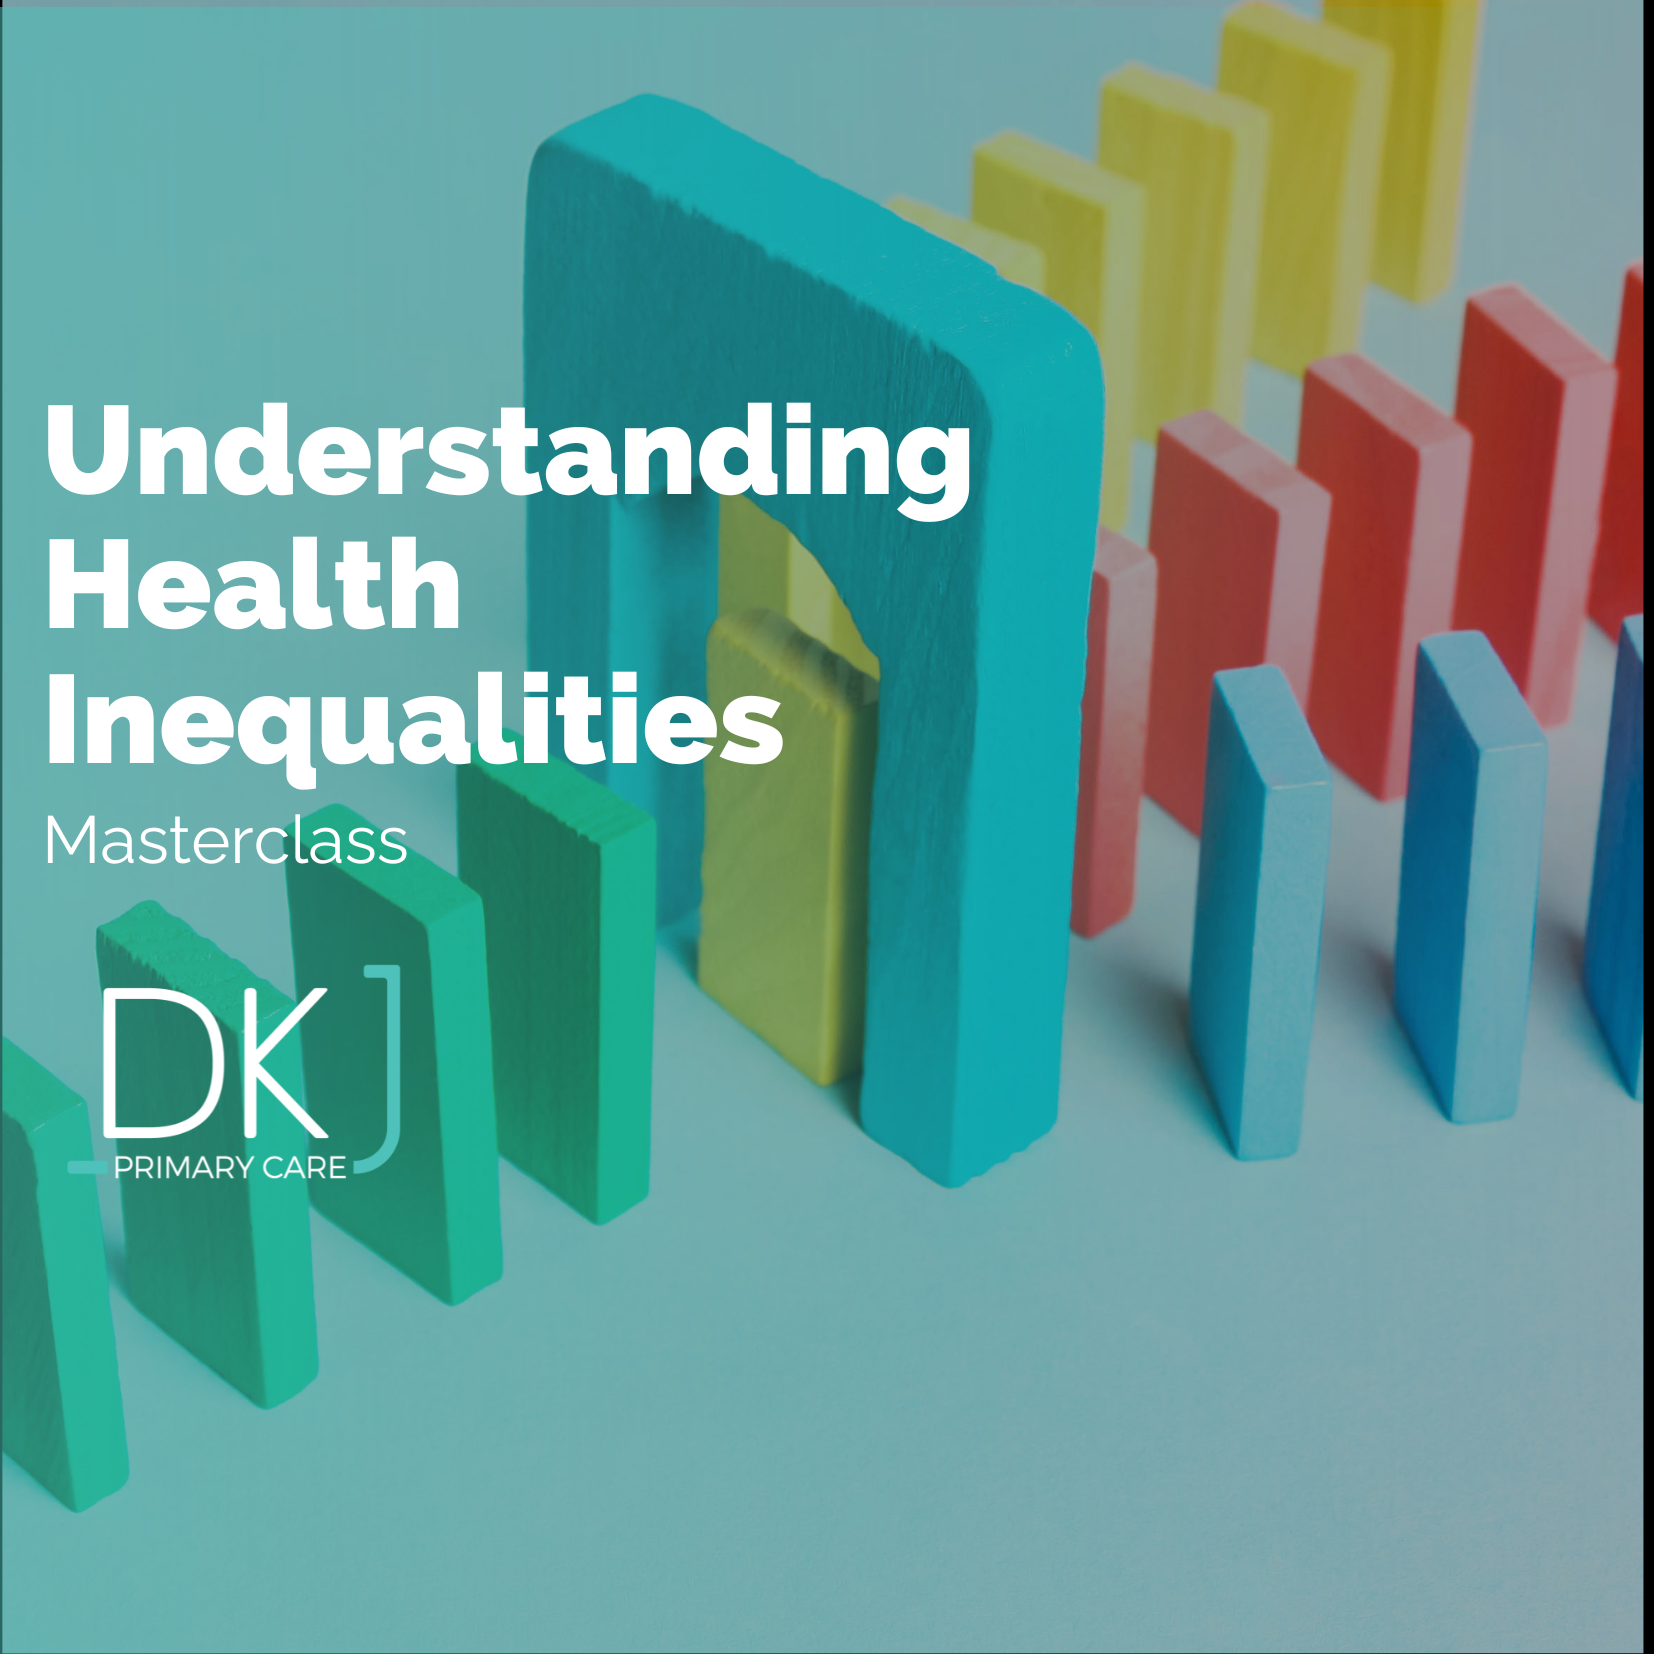 Masterclass: Understanding Health Inequalities